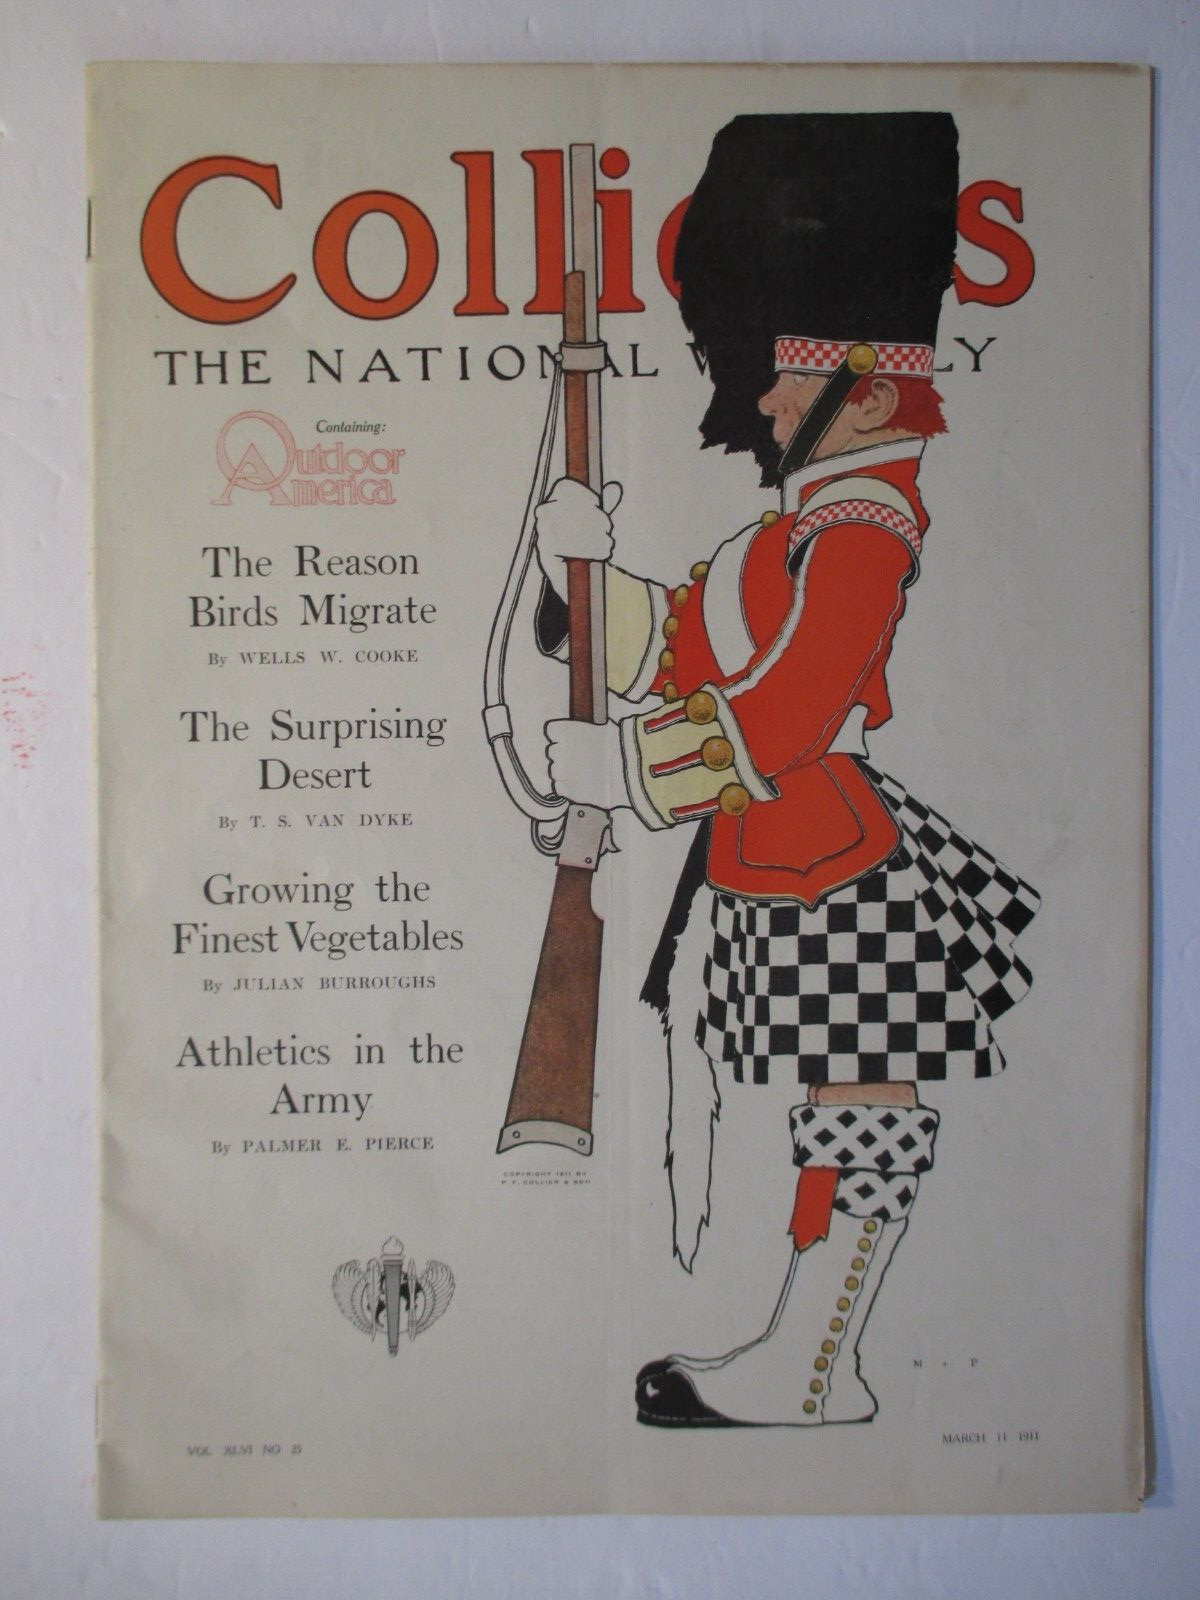 MAXFIELD PARRISH collier's magazine march 11, 1911 british soldier complete mag